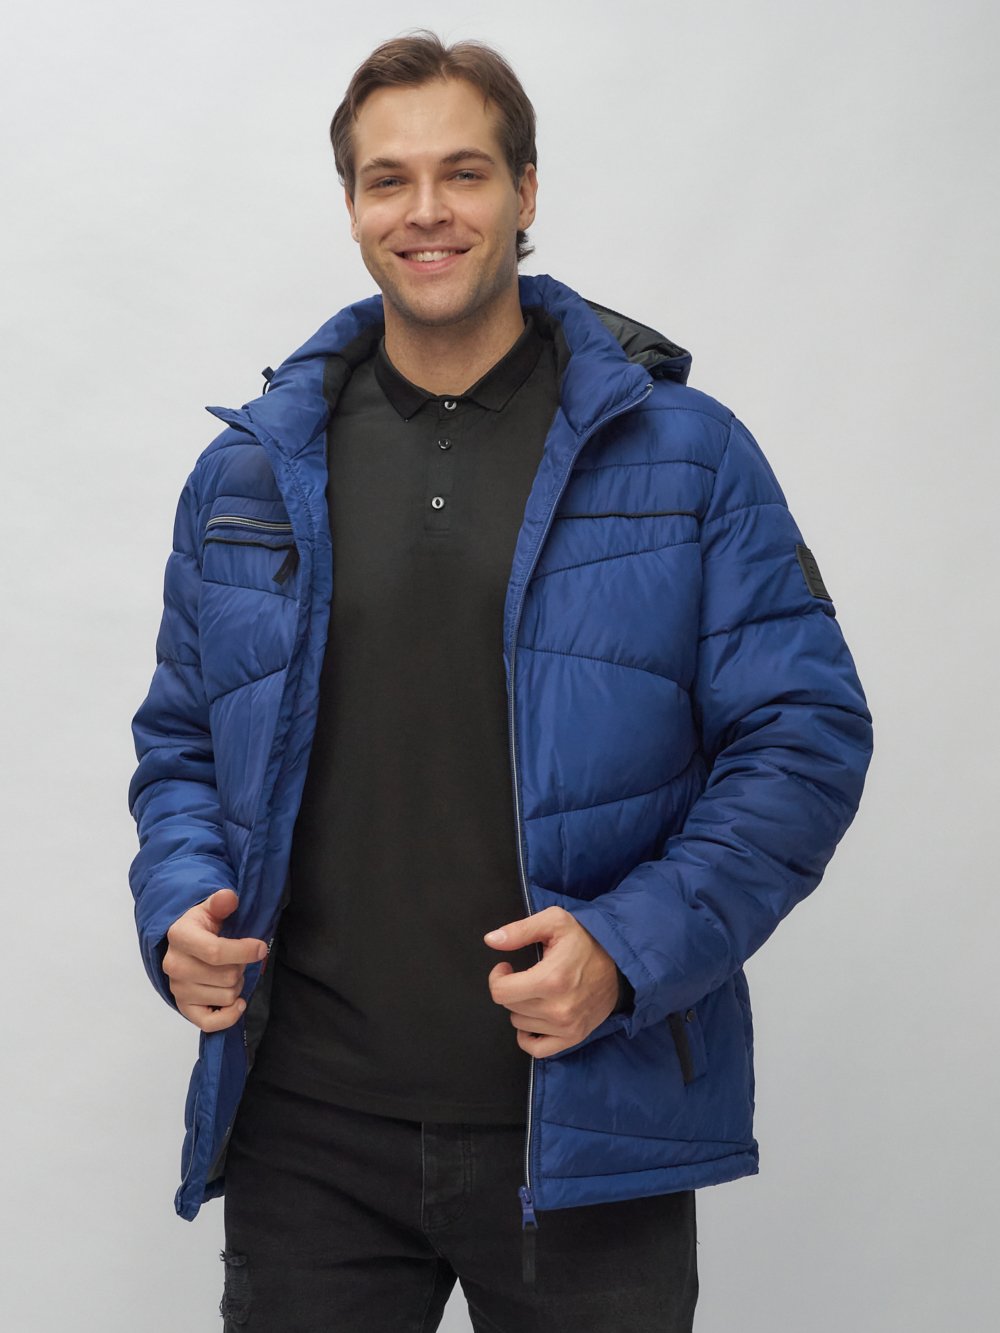 Купить куртку мужскую спортивную весеннюю оптом от производителя недорого в Москве 62188S 1